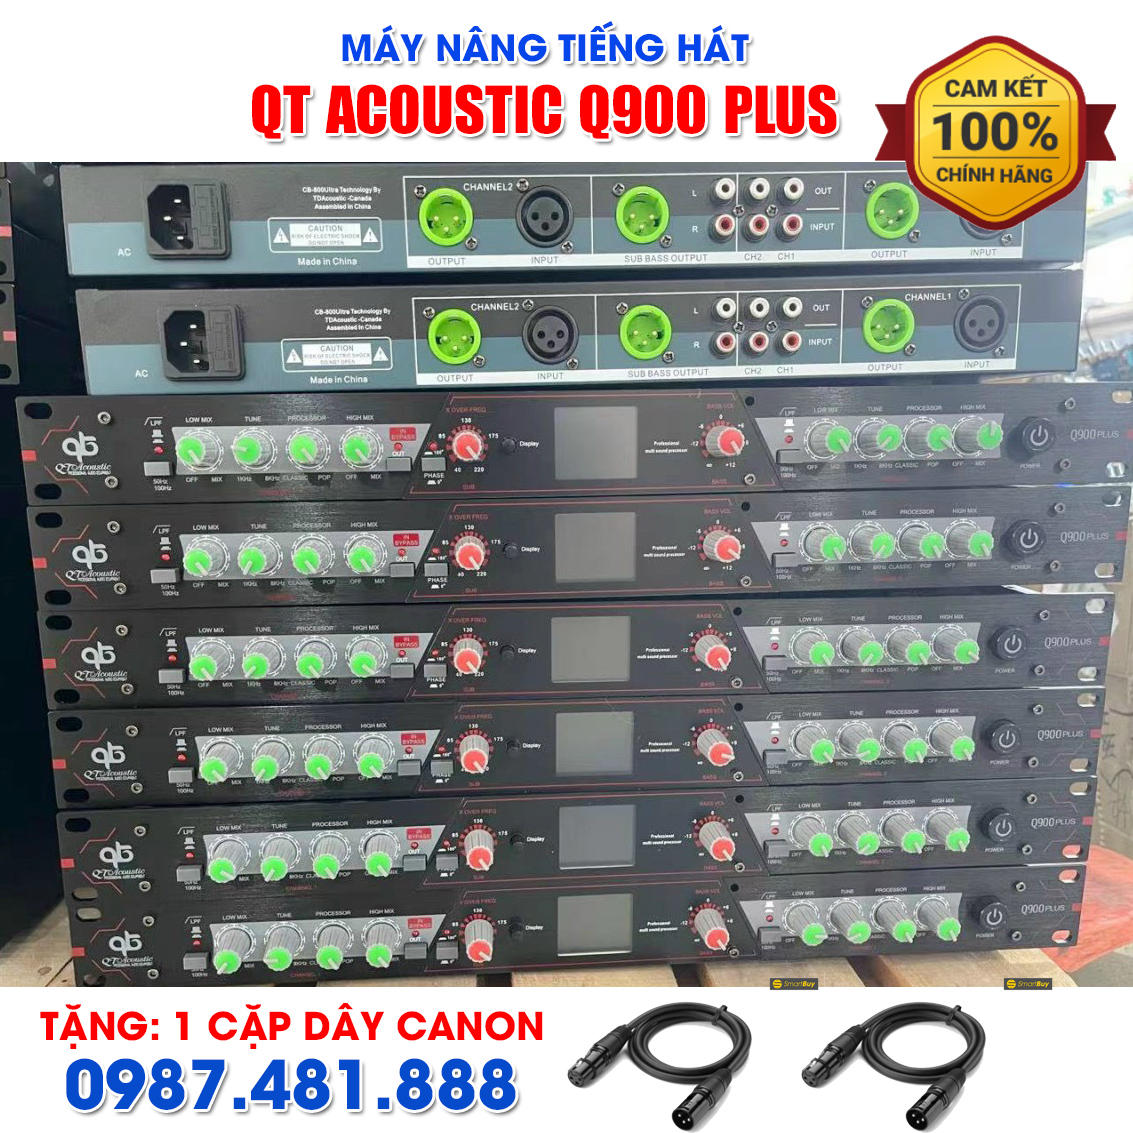 Nâng tiếng QT Acoustic Q900 Plus - Tặng dây canon - Hàng chính hãng